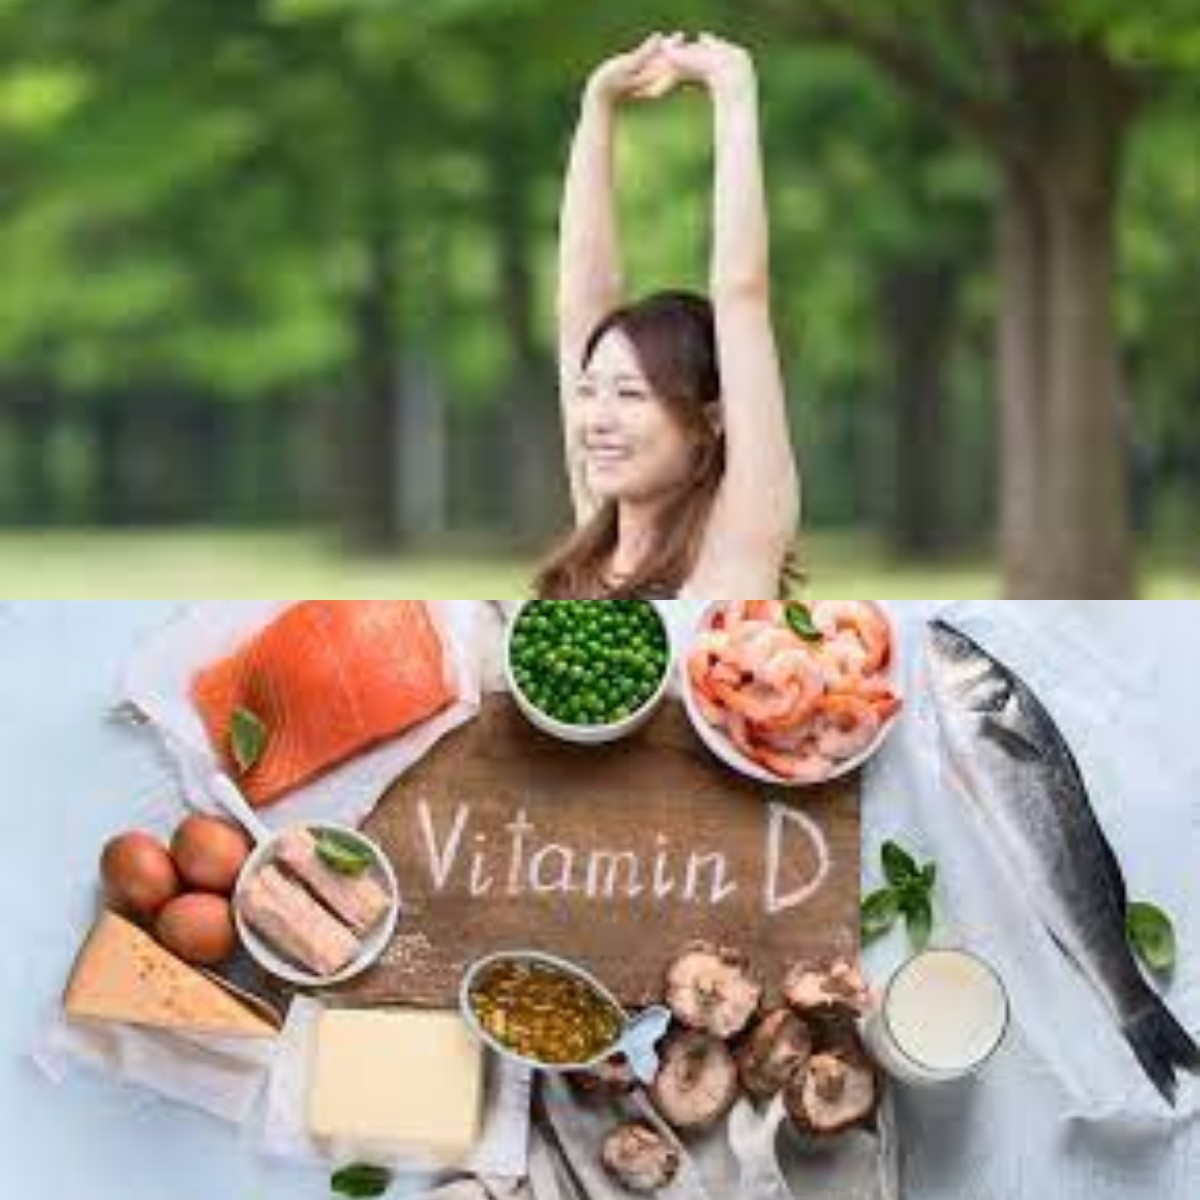 Mengulik 5 Rahasia Tersembunyi dari Vitamin D untuk Keseimbangan Hormon 